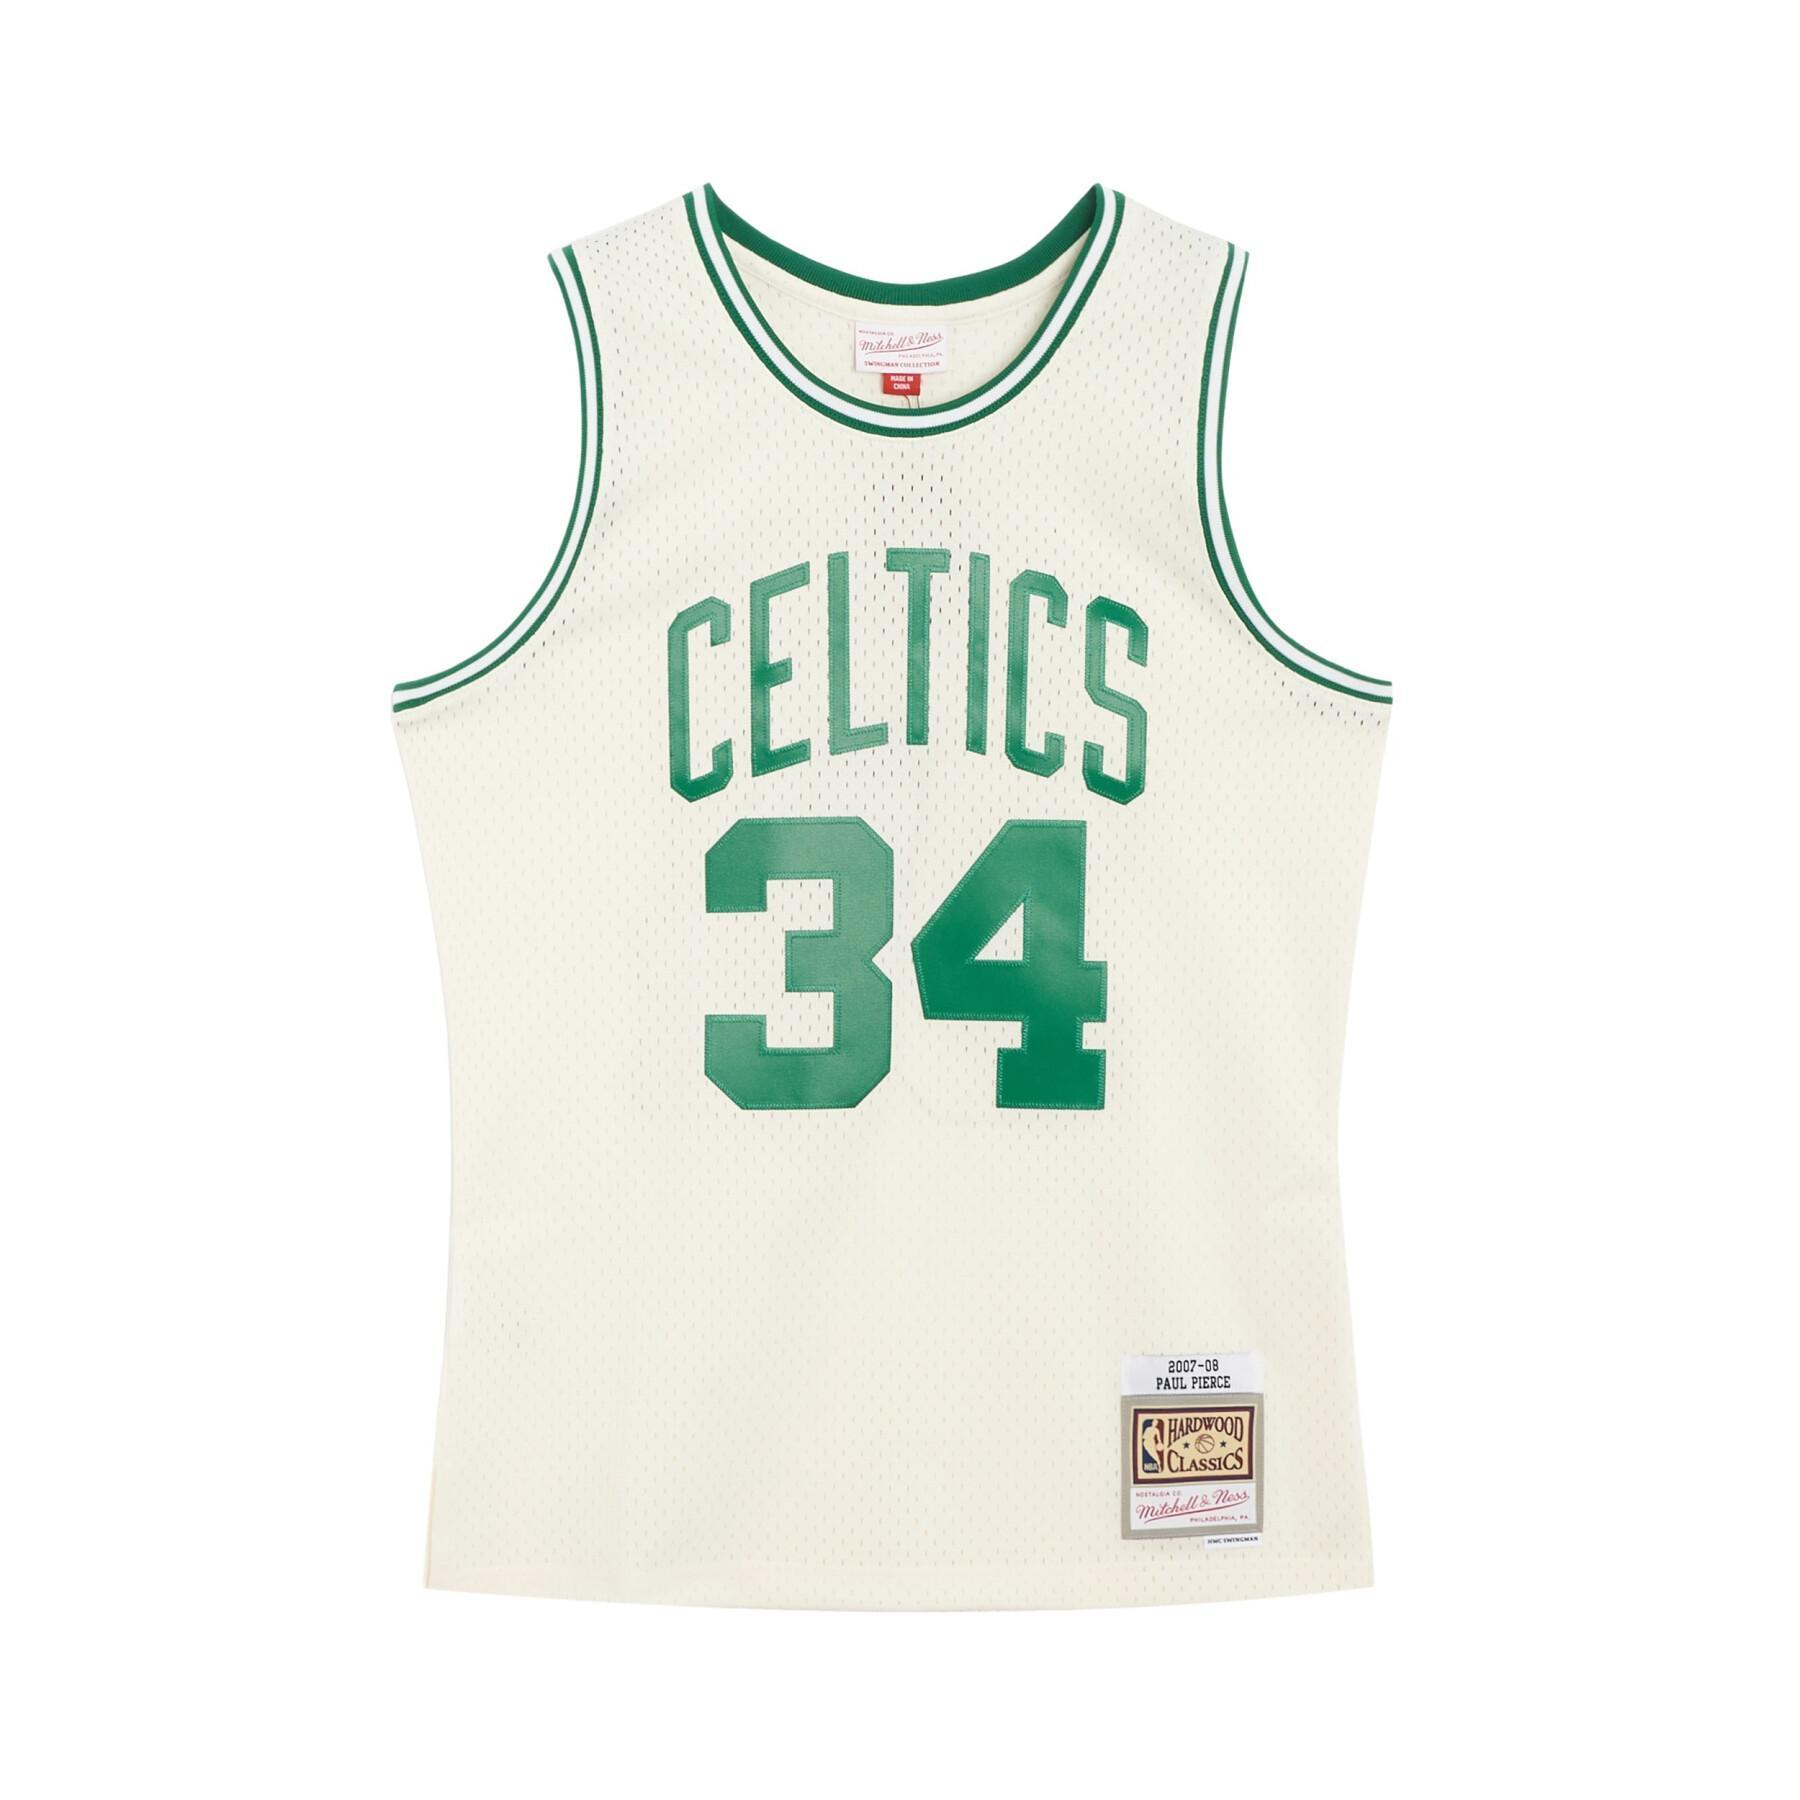 CamisetaBoston Celtics Paul Pierce NBA 2007